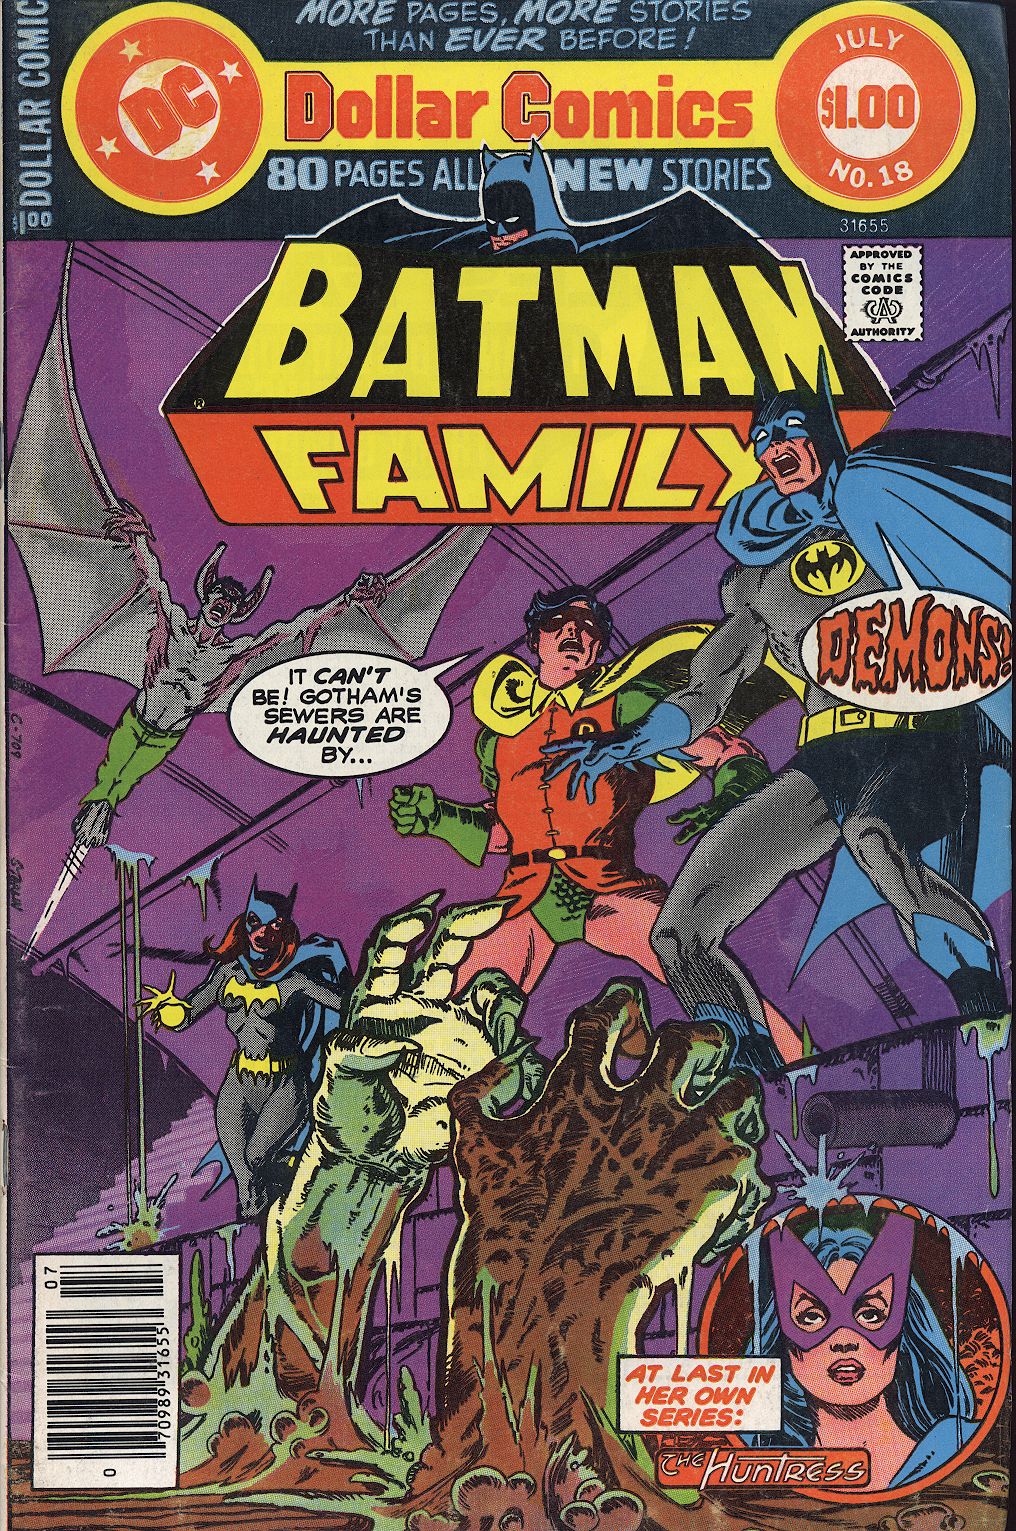 Комикс семья 18. Batman Family комиксы. Бэтмен семья. Batman Comics Cover. Комиксы семейные 18 +.